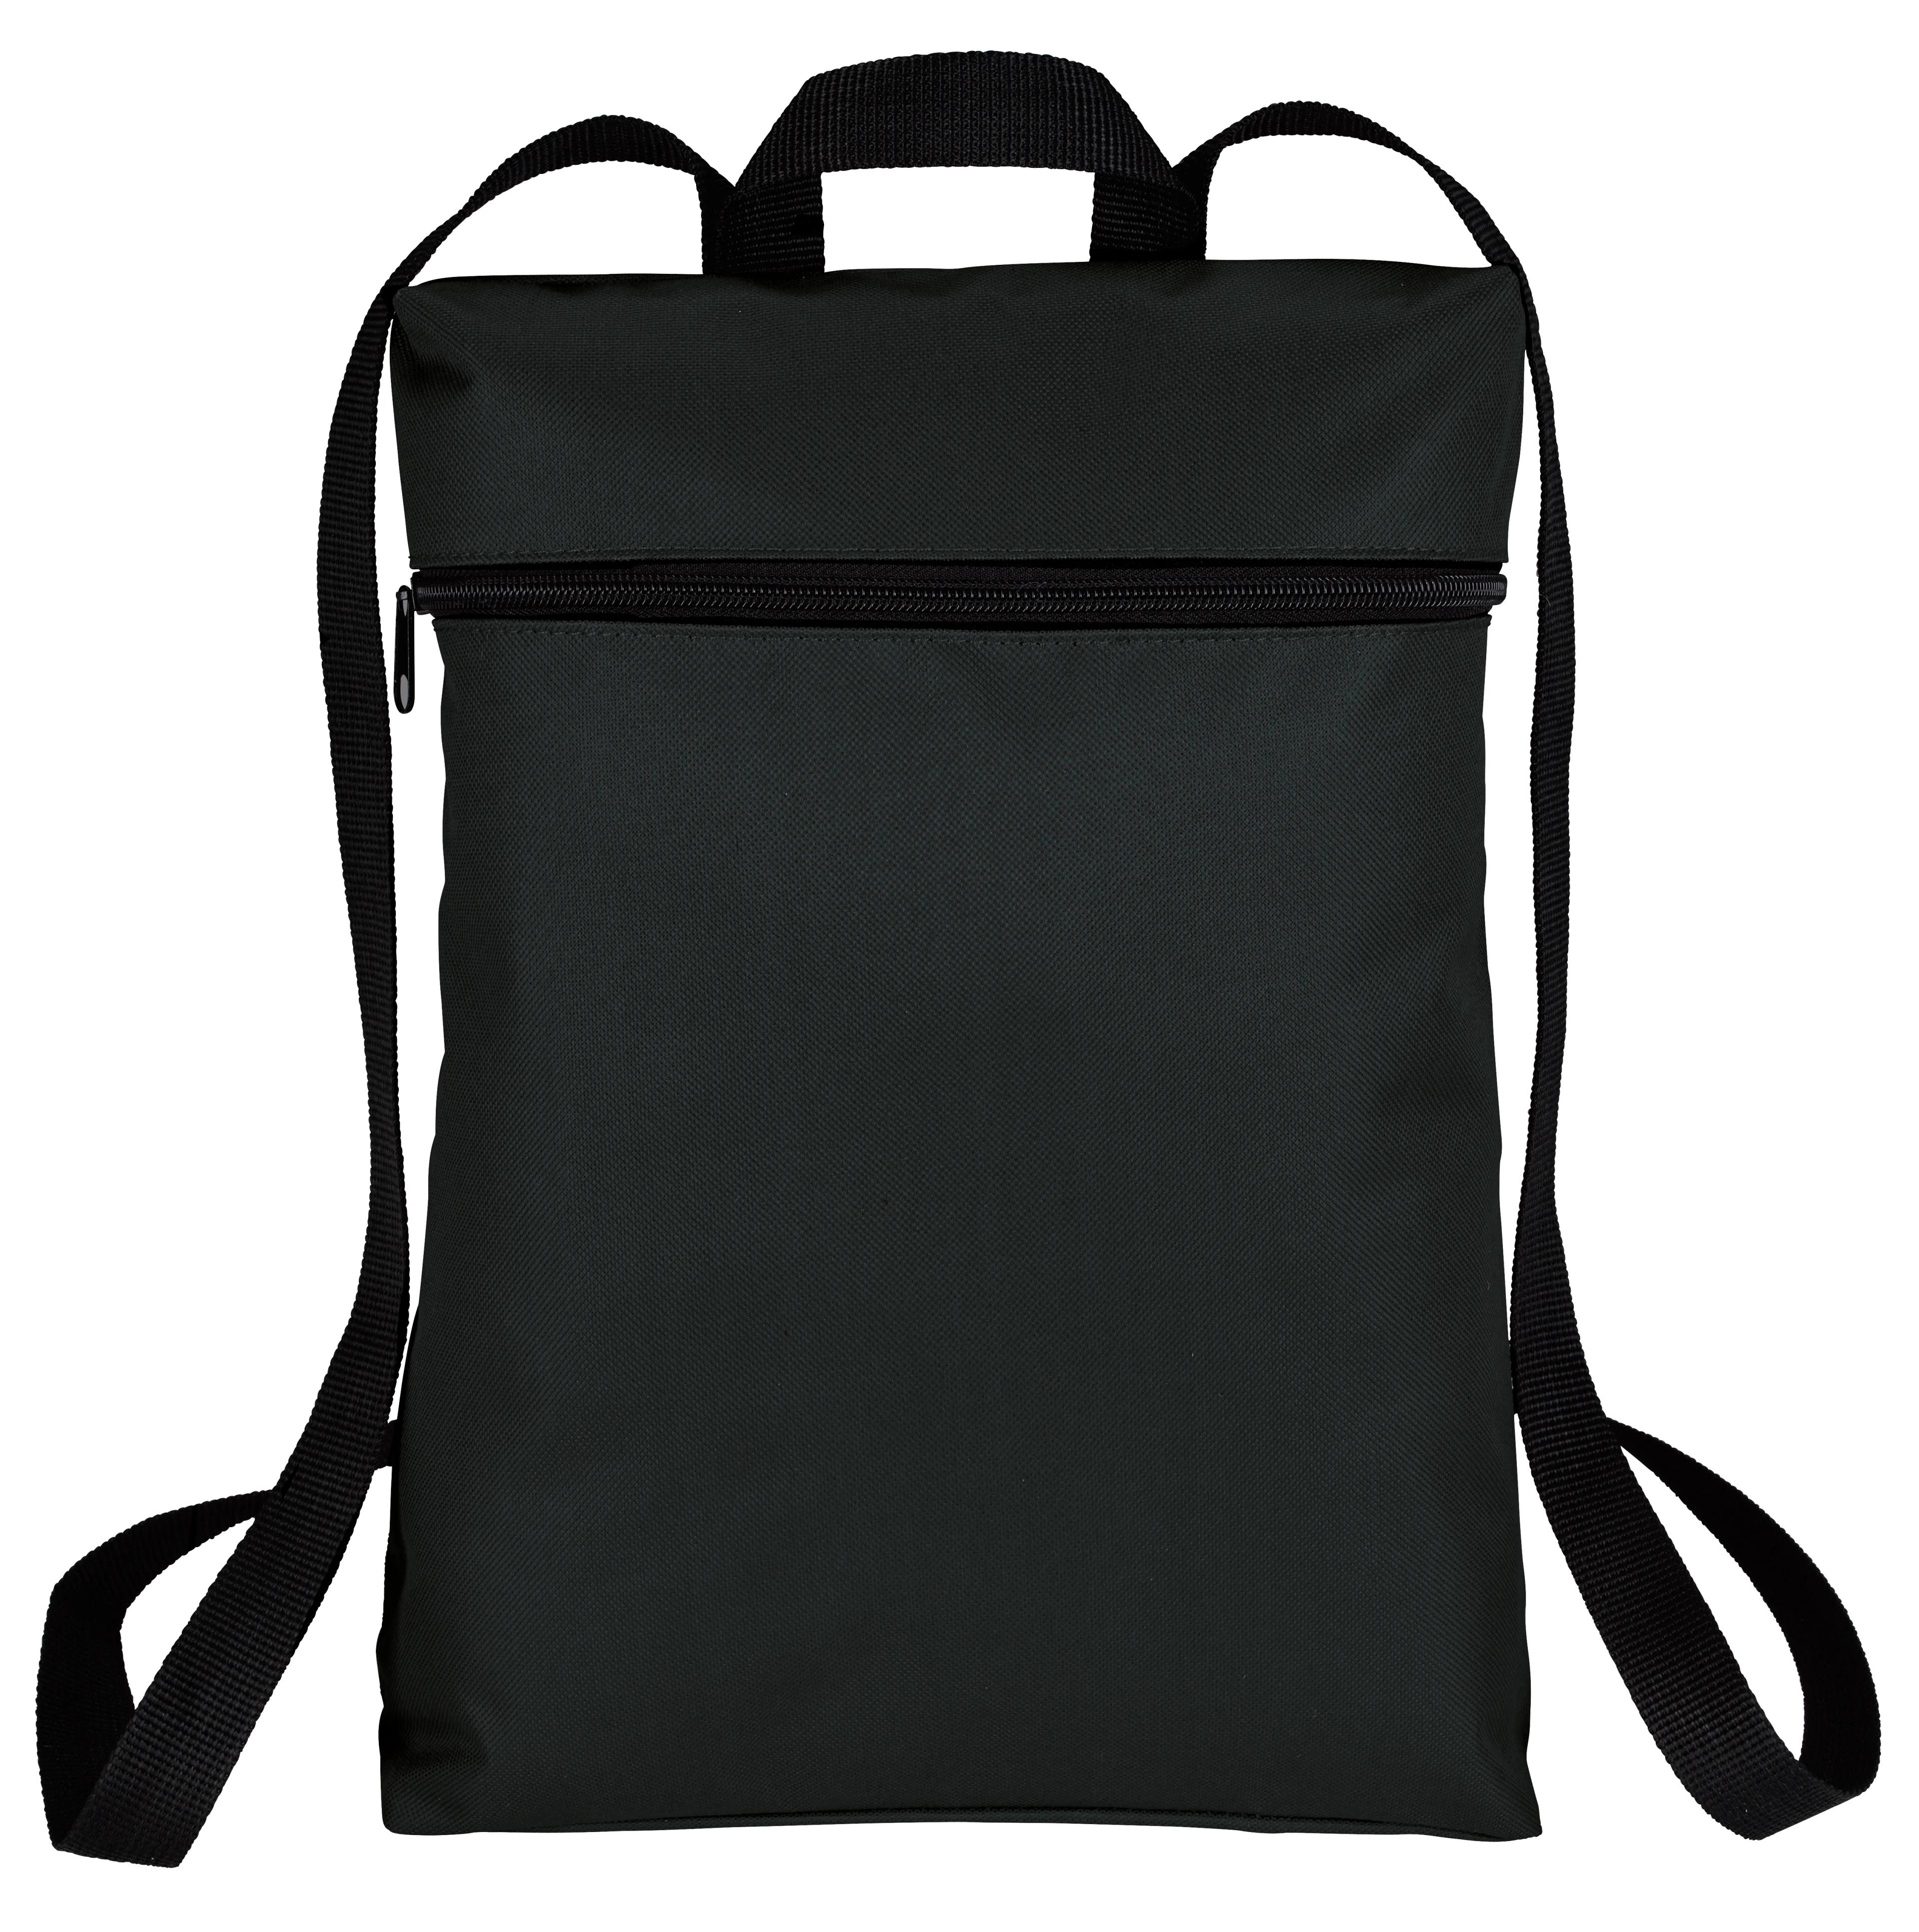 Simple Zip Backpack 2 of 7